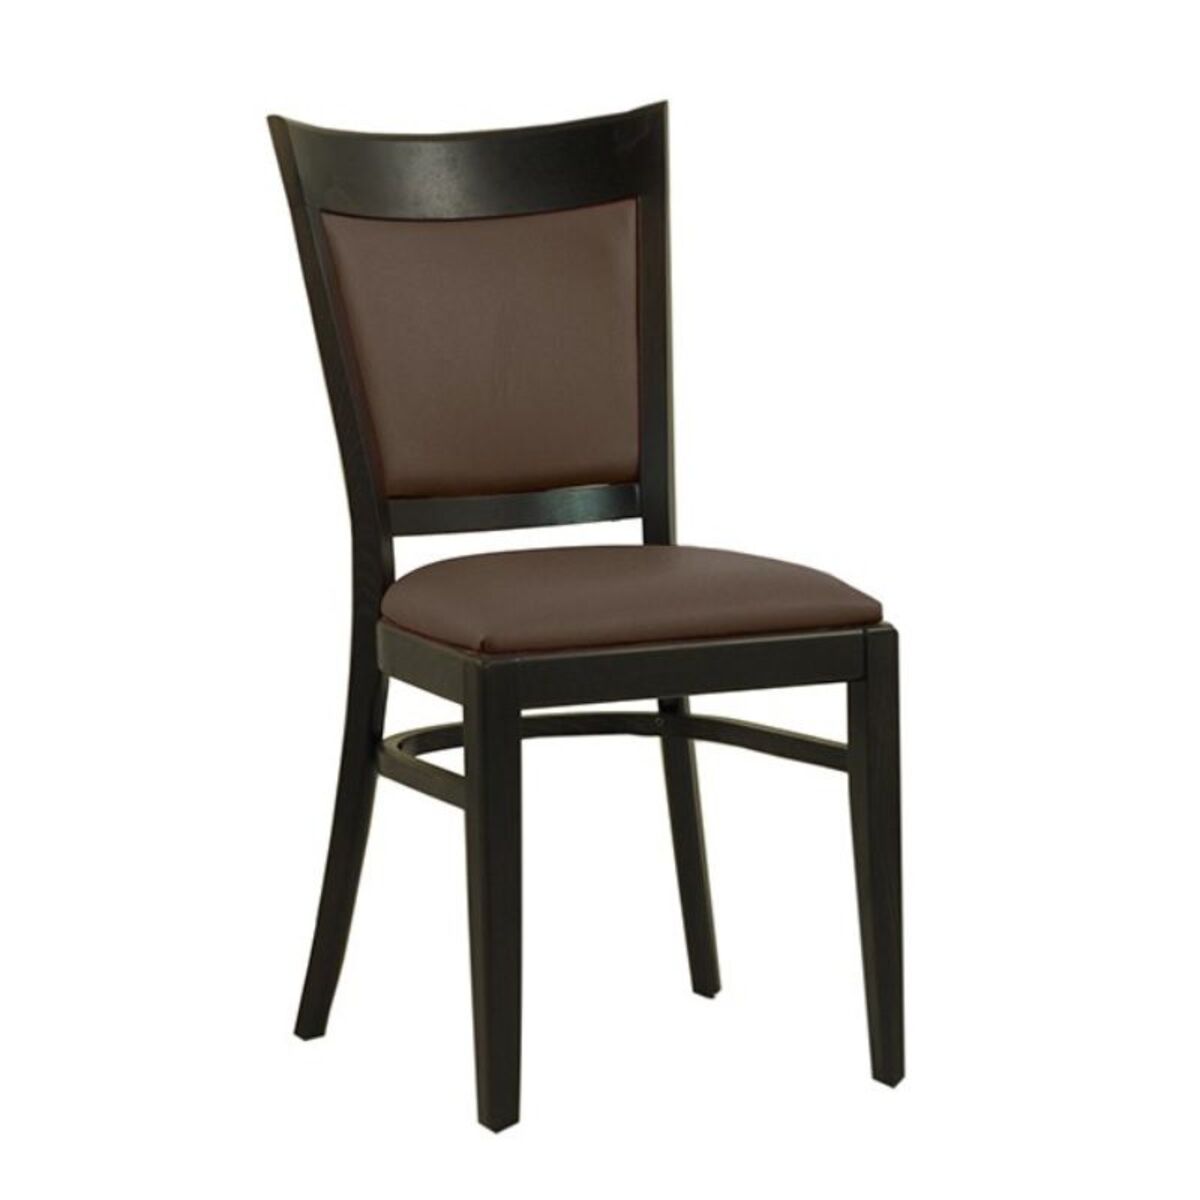 Chaise en bois avec assise et dossier rembourrés en simili cuir coloris marron